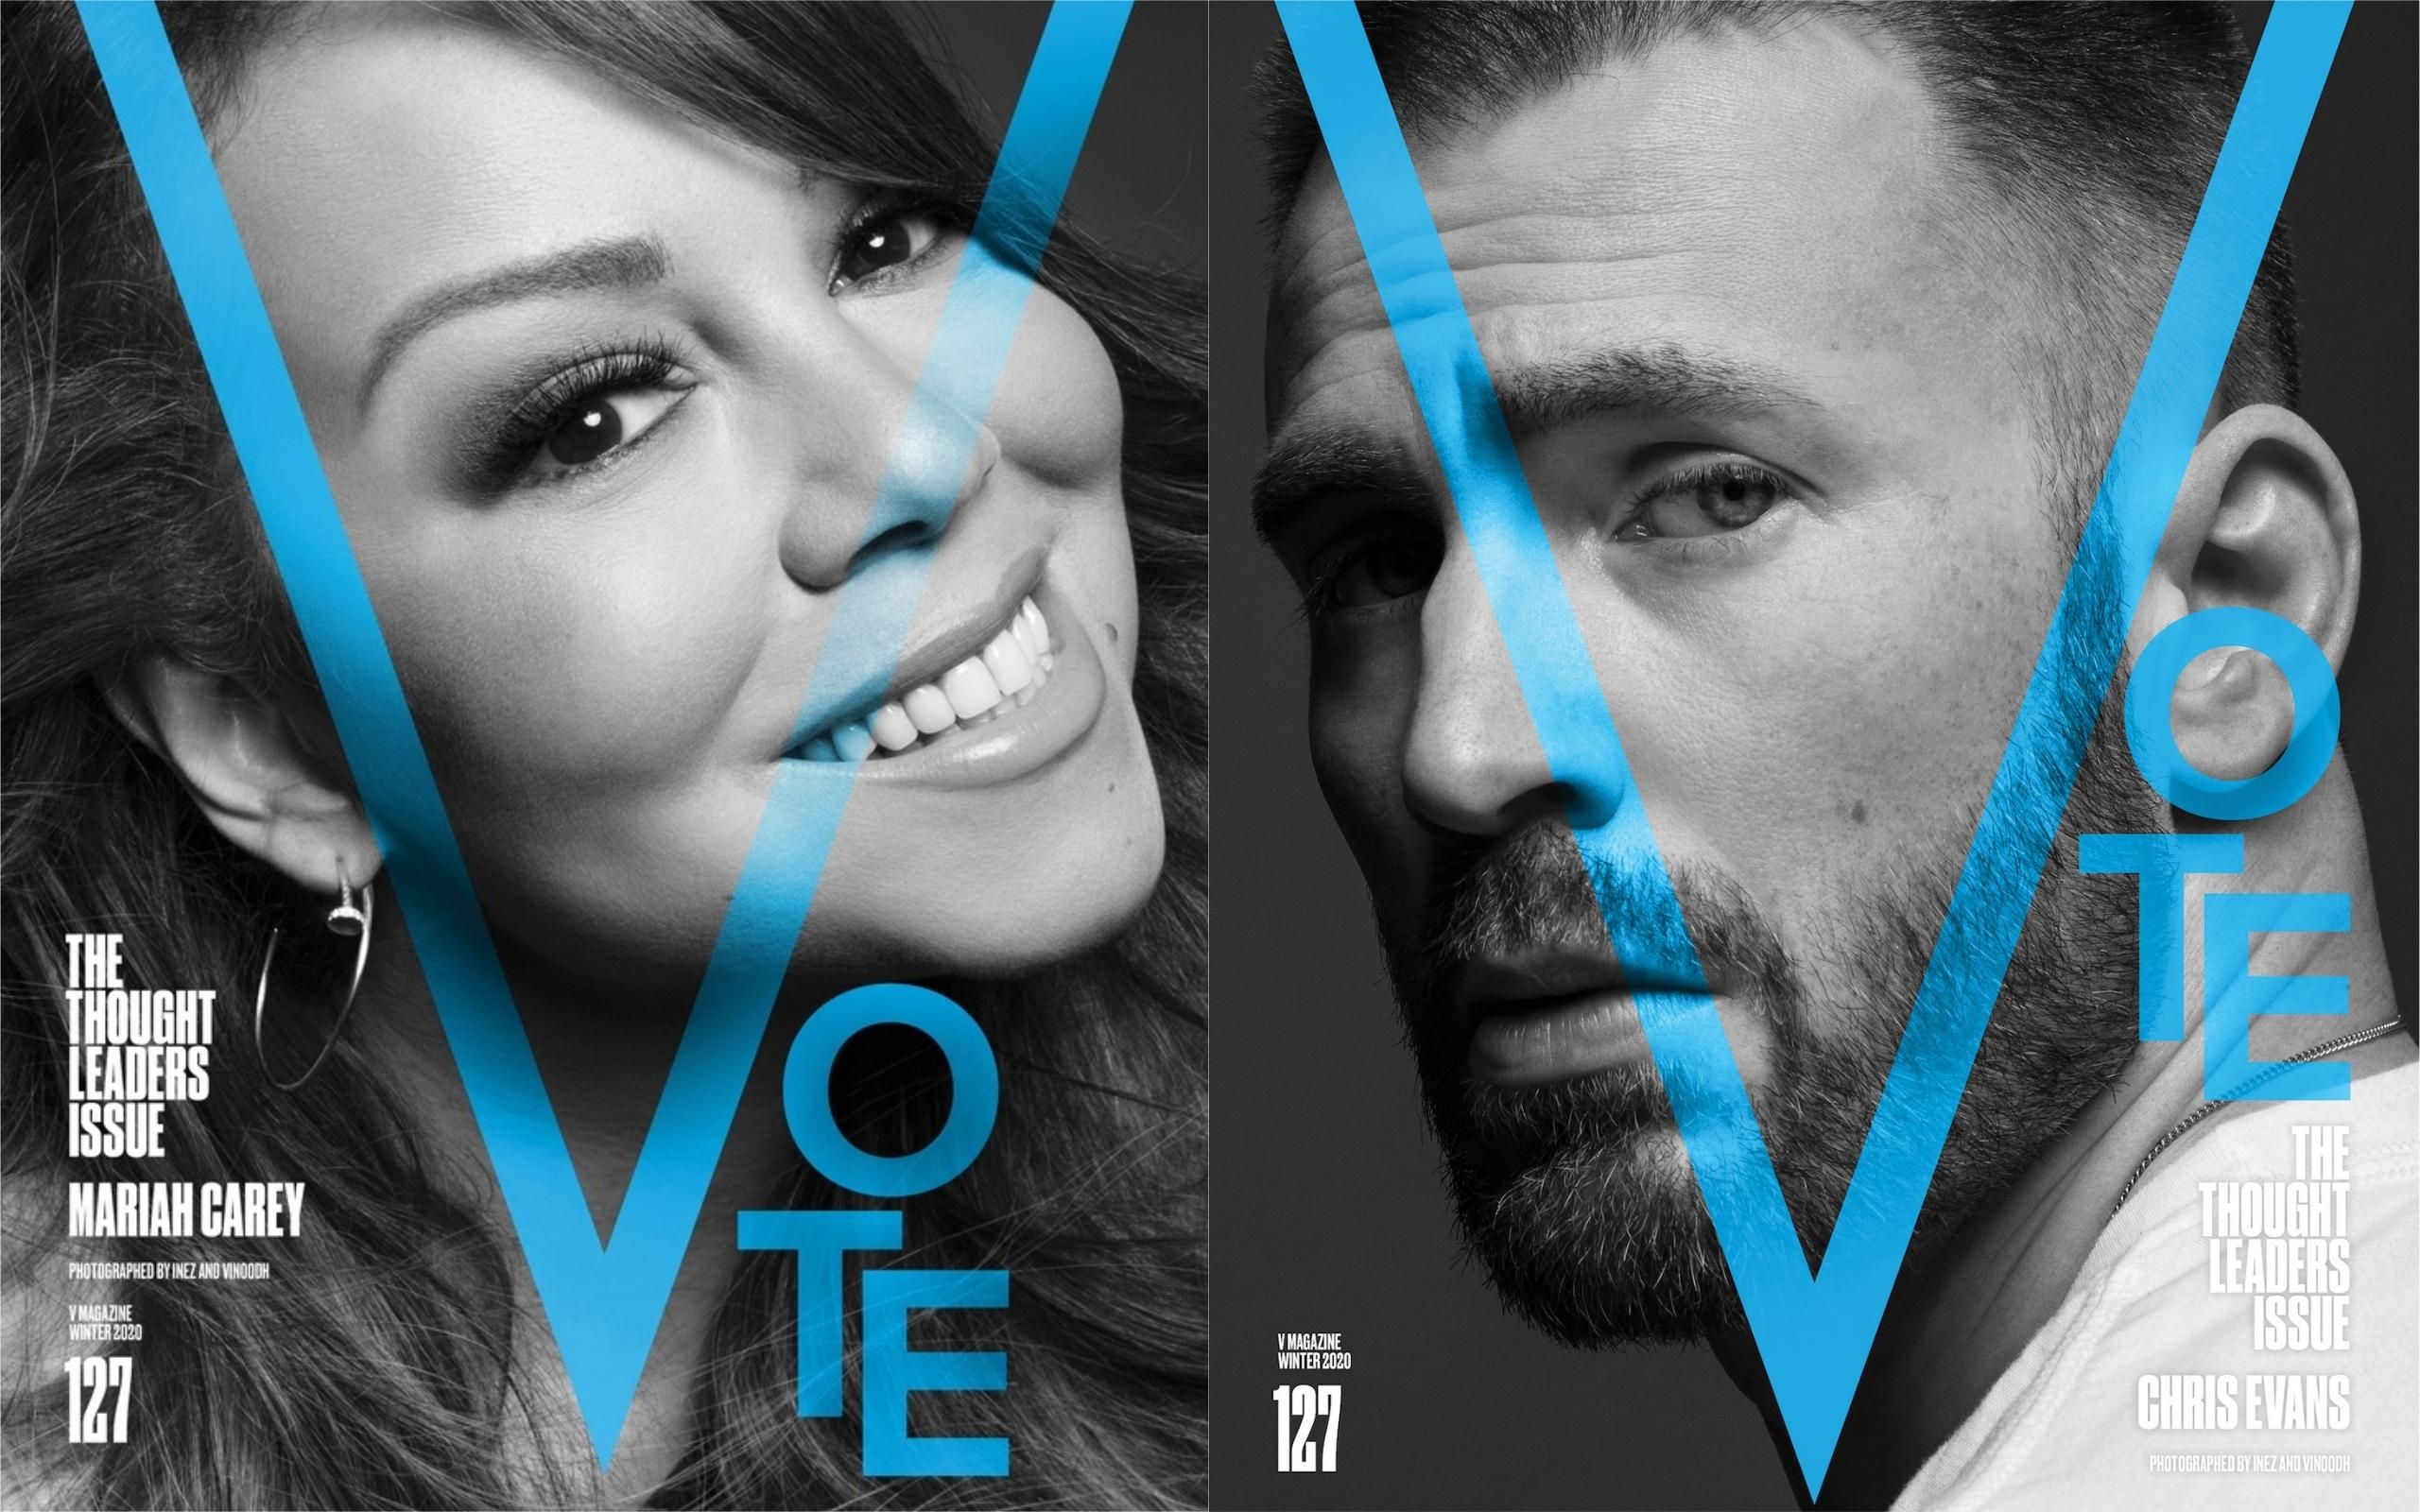 V is for Vote: американські зірки взяли участь у символічній фотосесії перед виборами у США